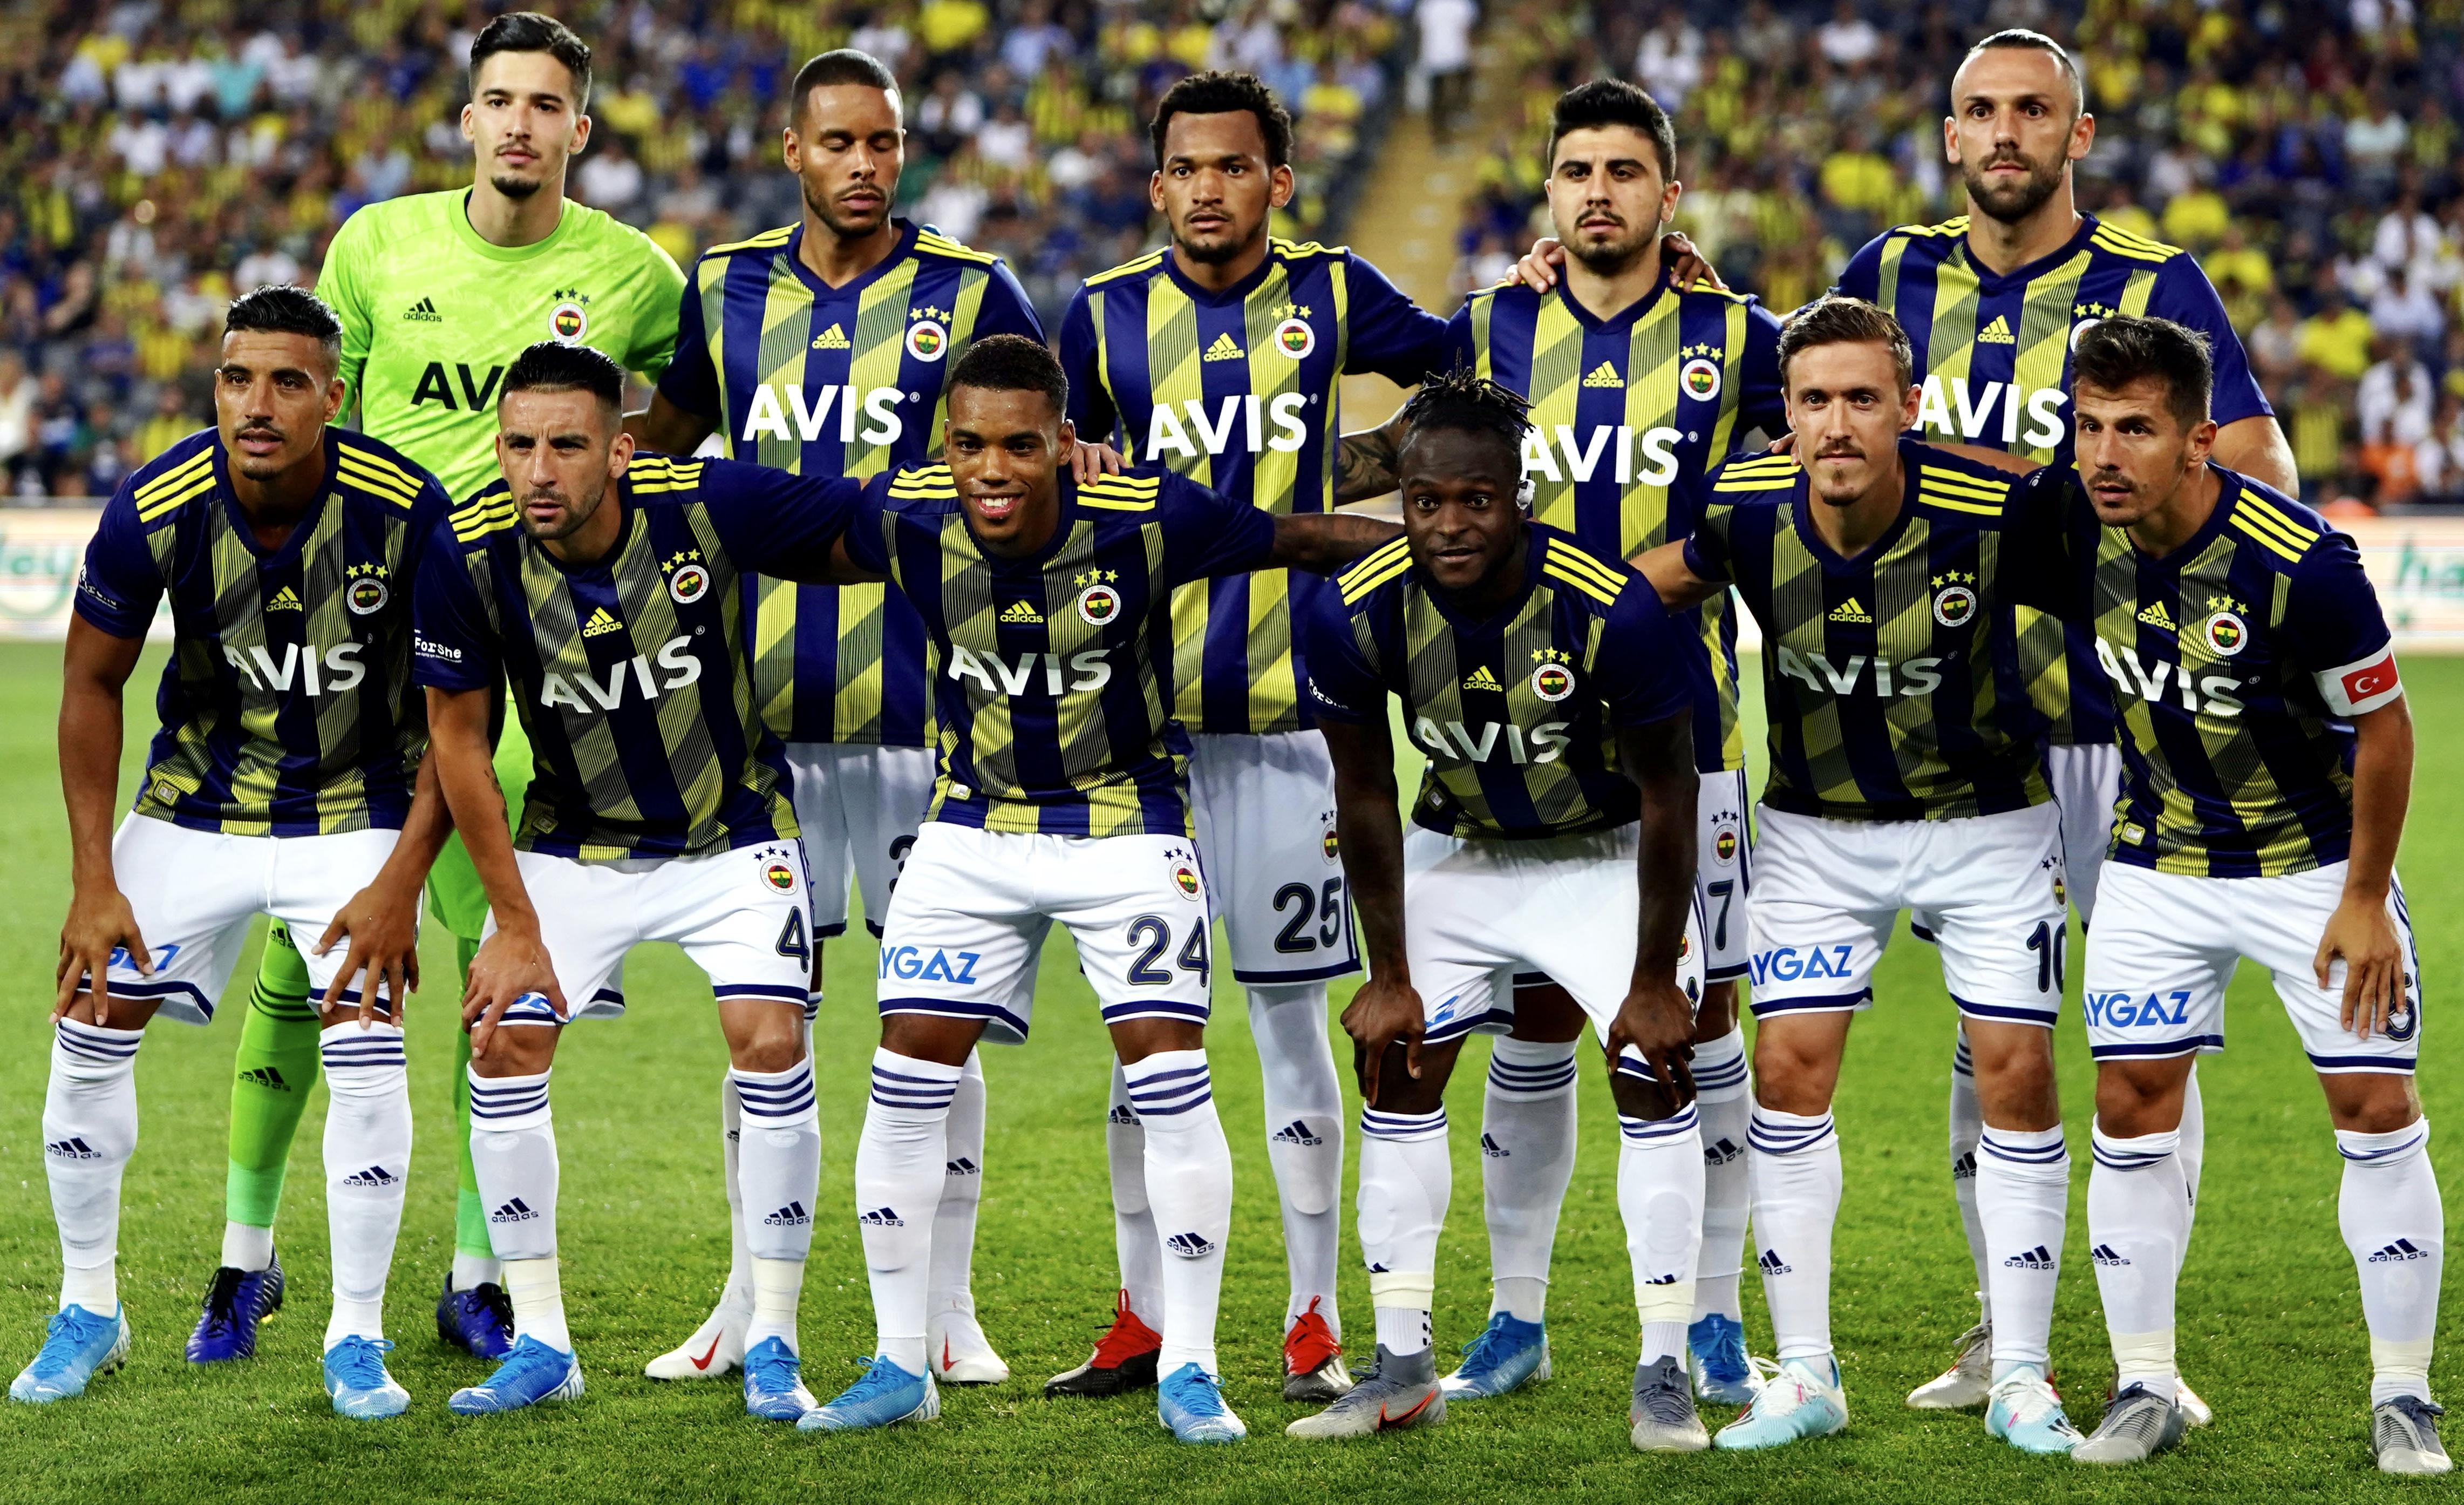 Fenerbahçenin 2019-2020 sezonu kabusa döndü Fenerbahçenin 26 haftalık maç periyodu